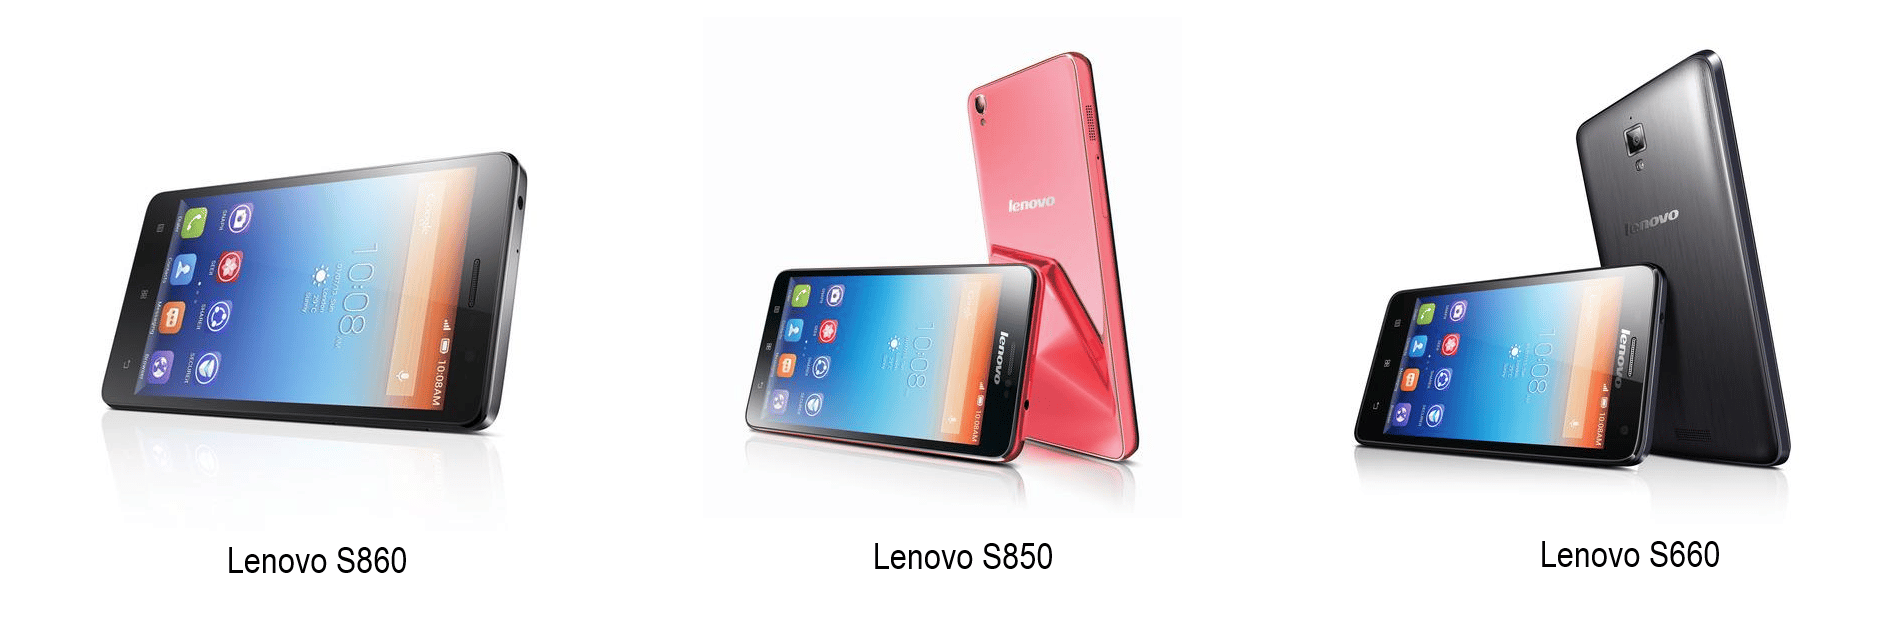 Lenovo presentó en la Mobile World Congress su nueva serie S de smartphones.